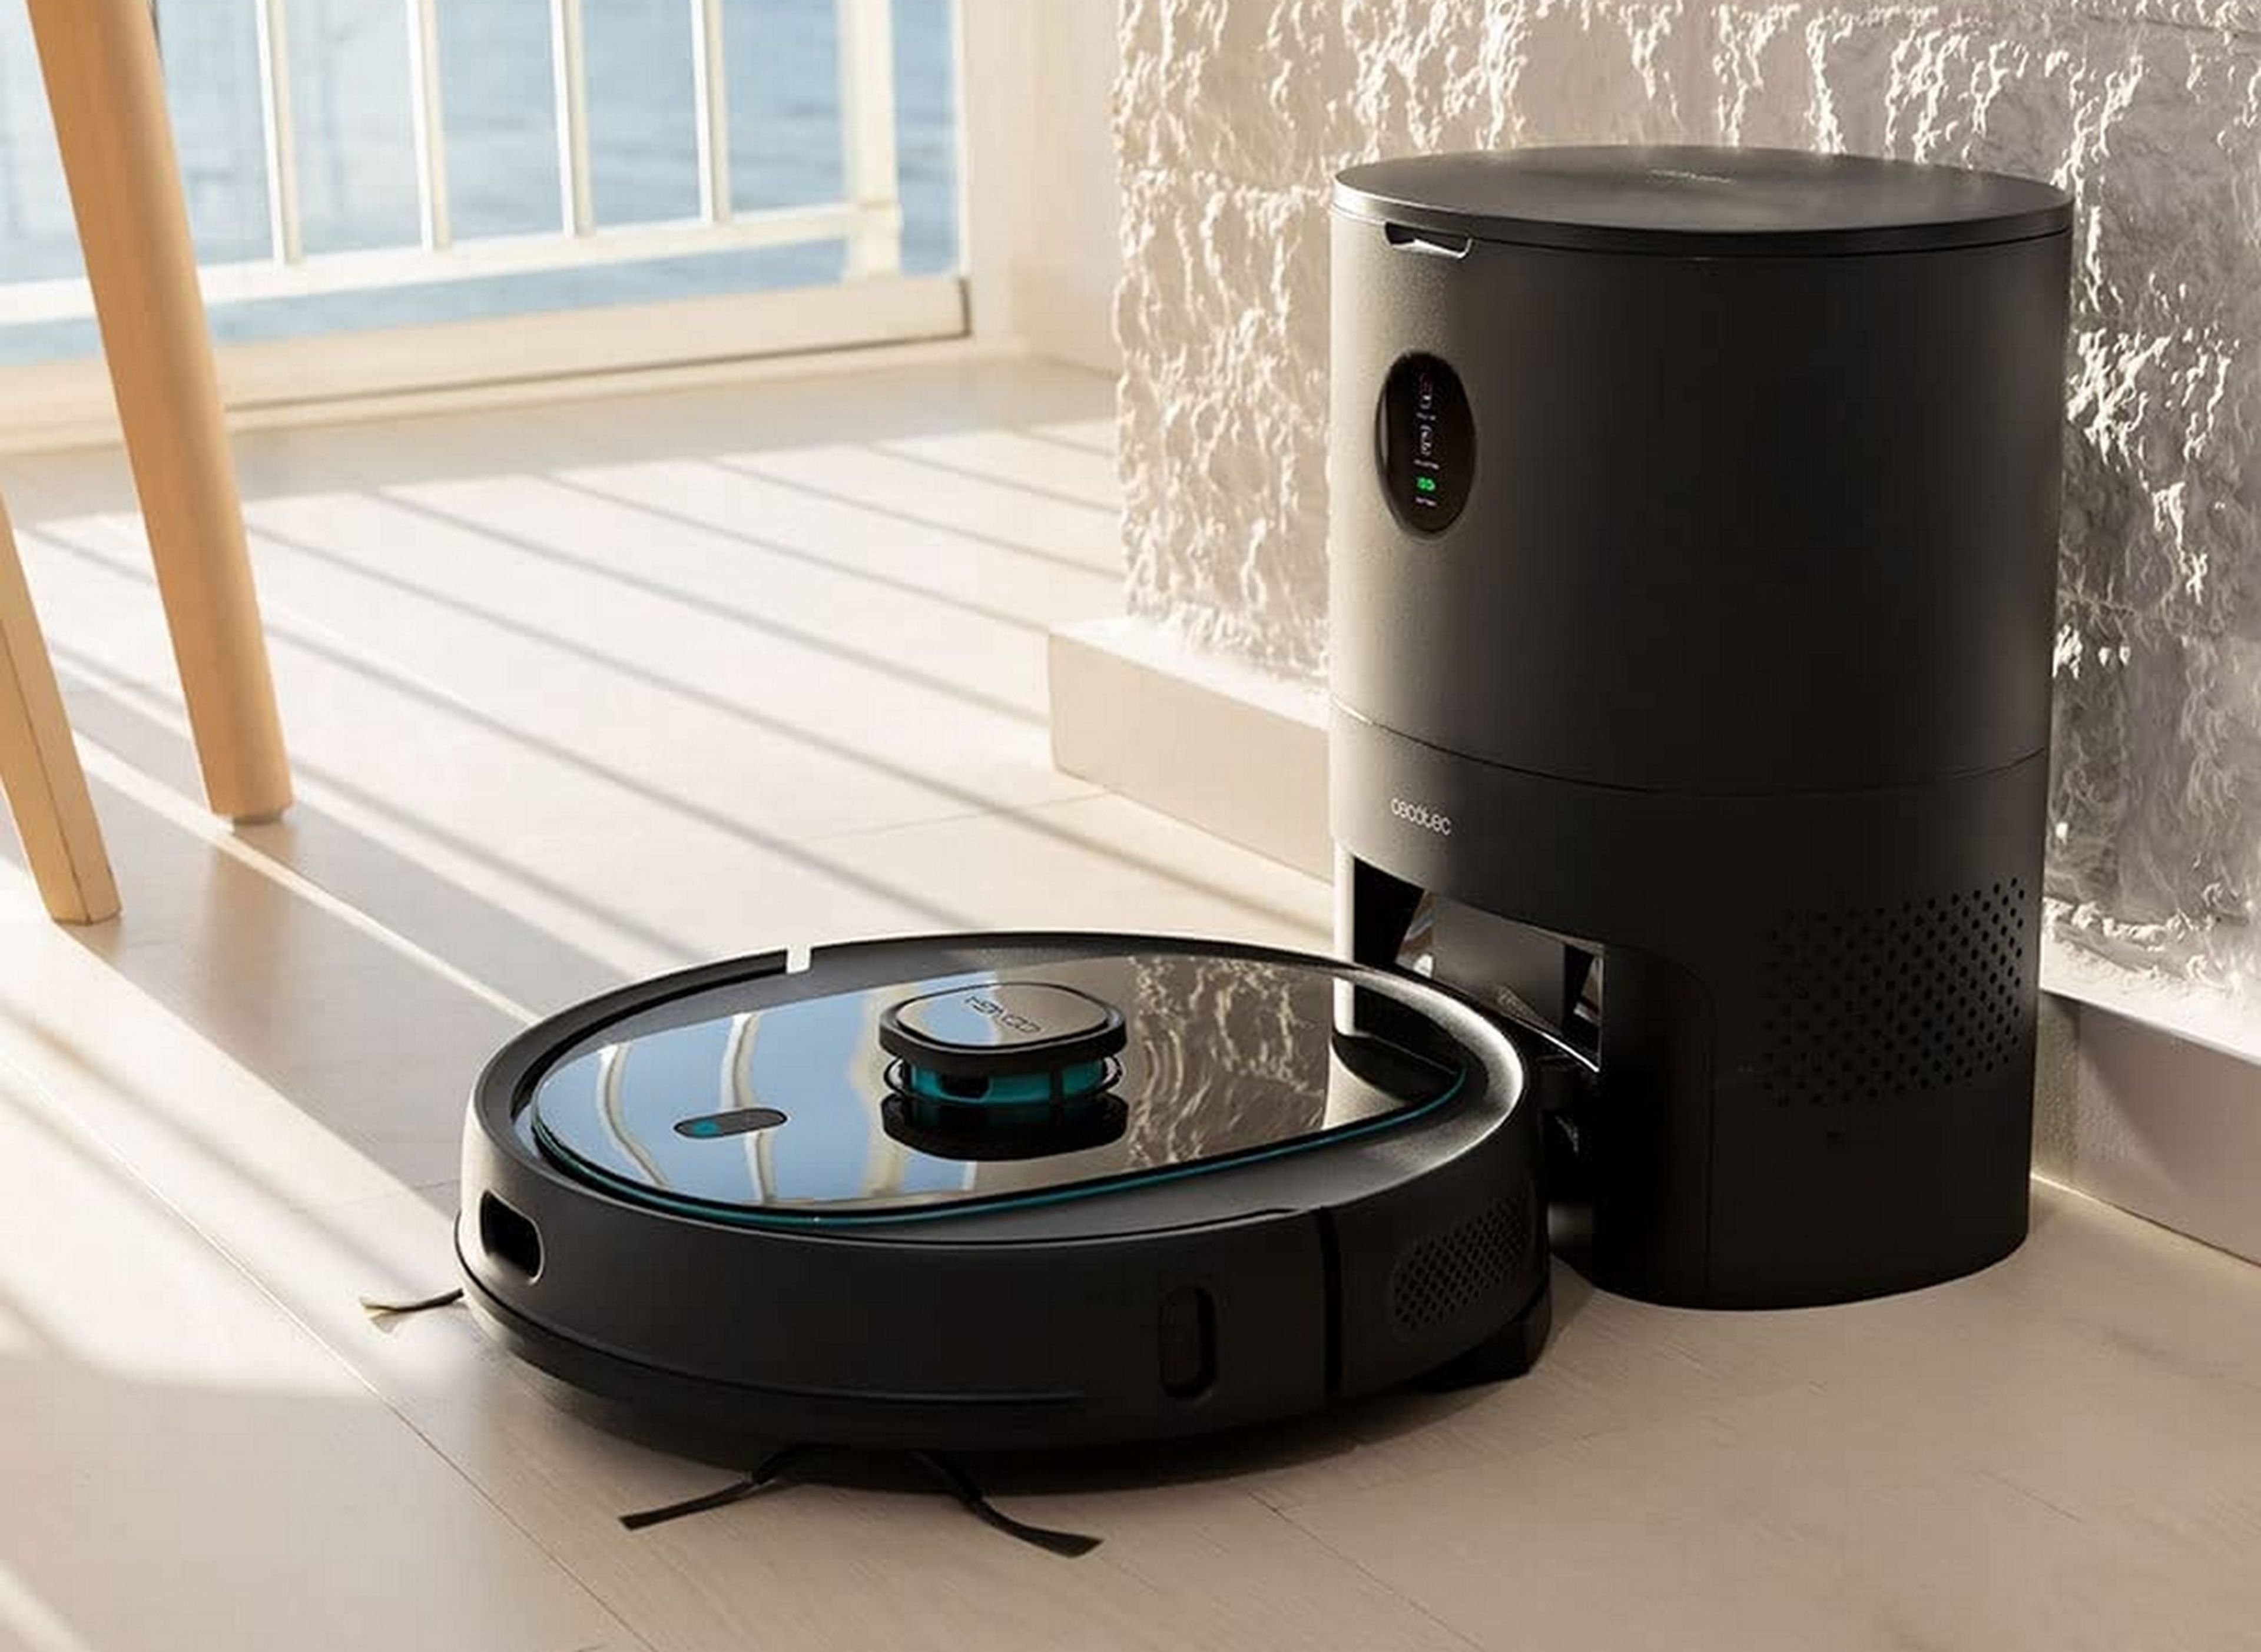 Ofertón del día: este robot aspirador Roomba está rebajado 140